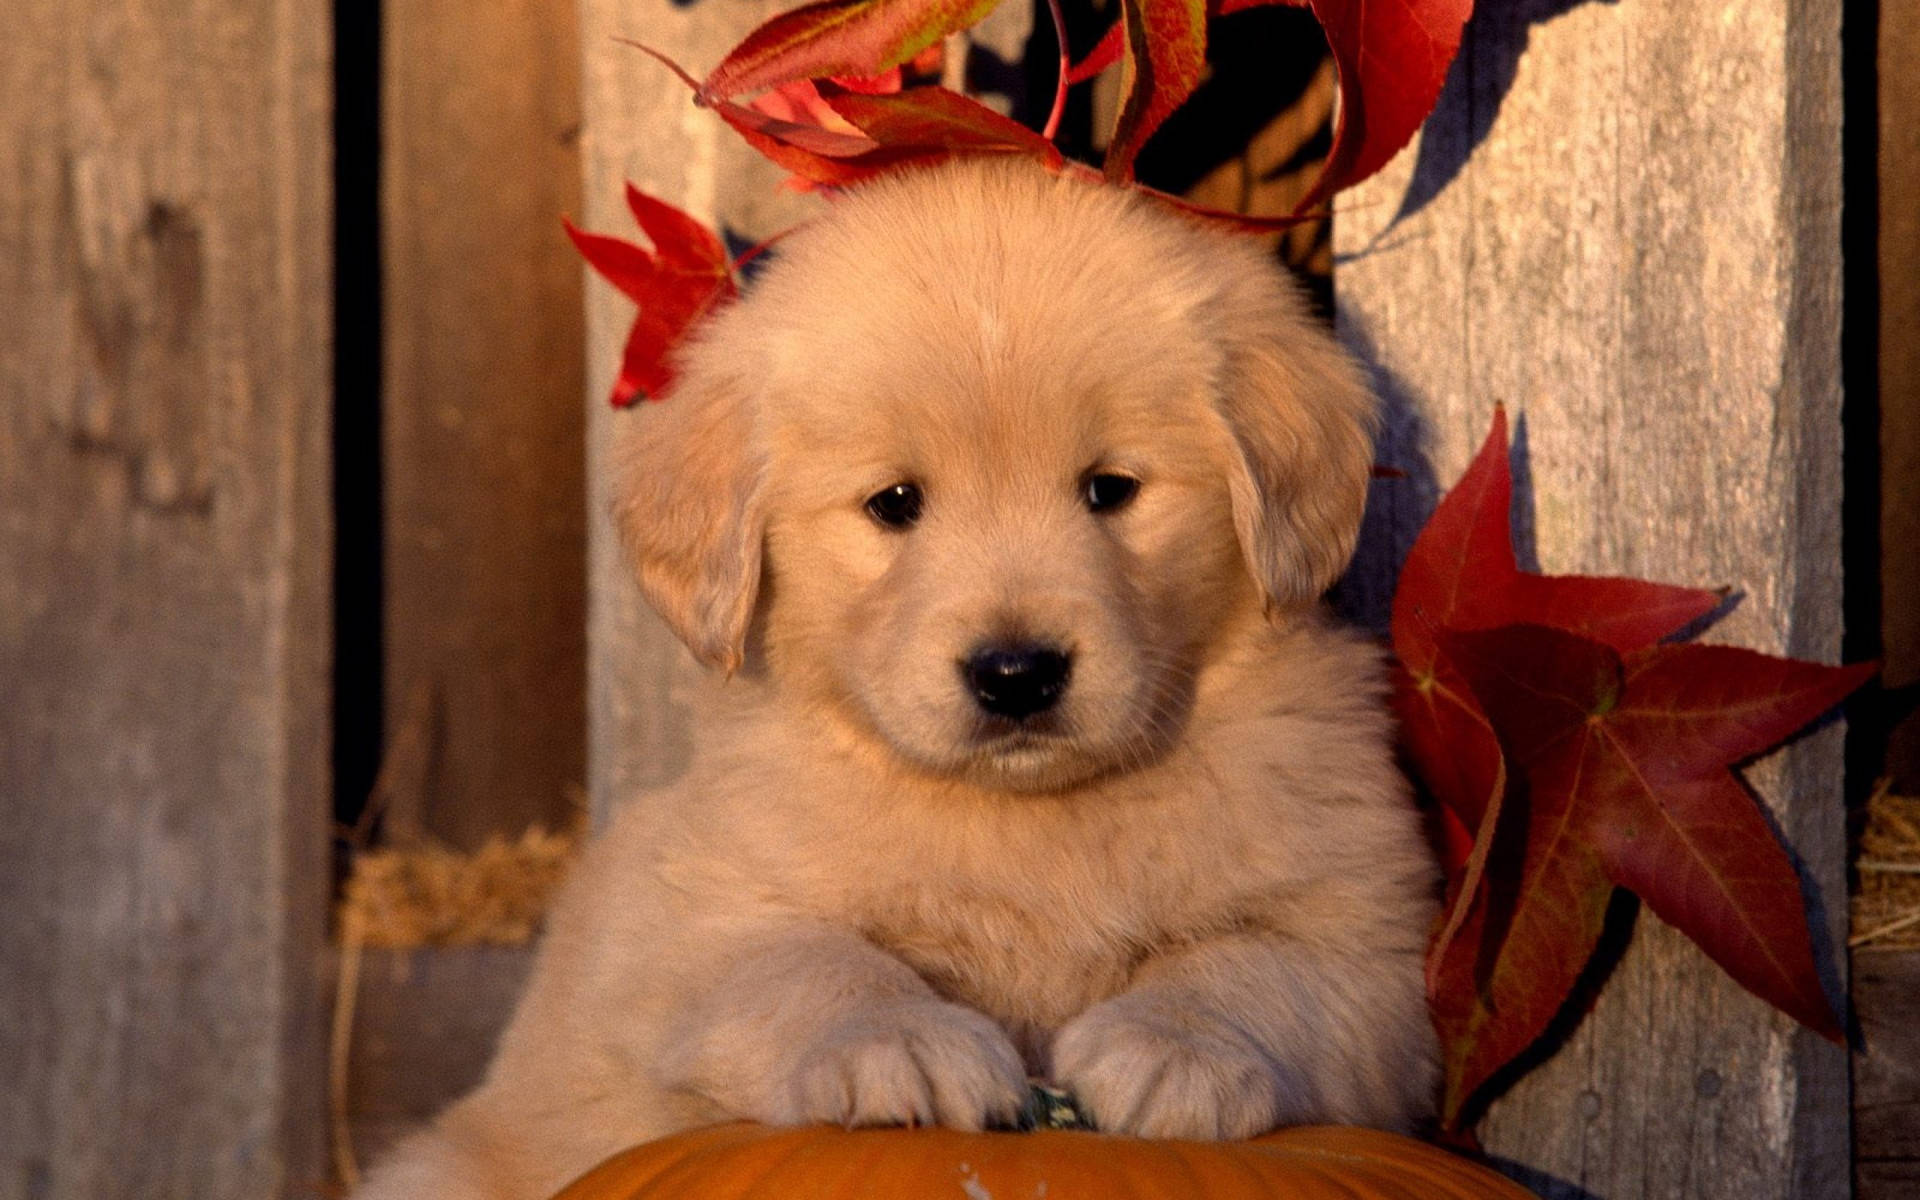 Adorable Golden Retriever Puppy Enjoying Autumn